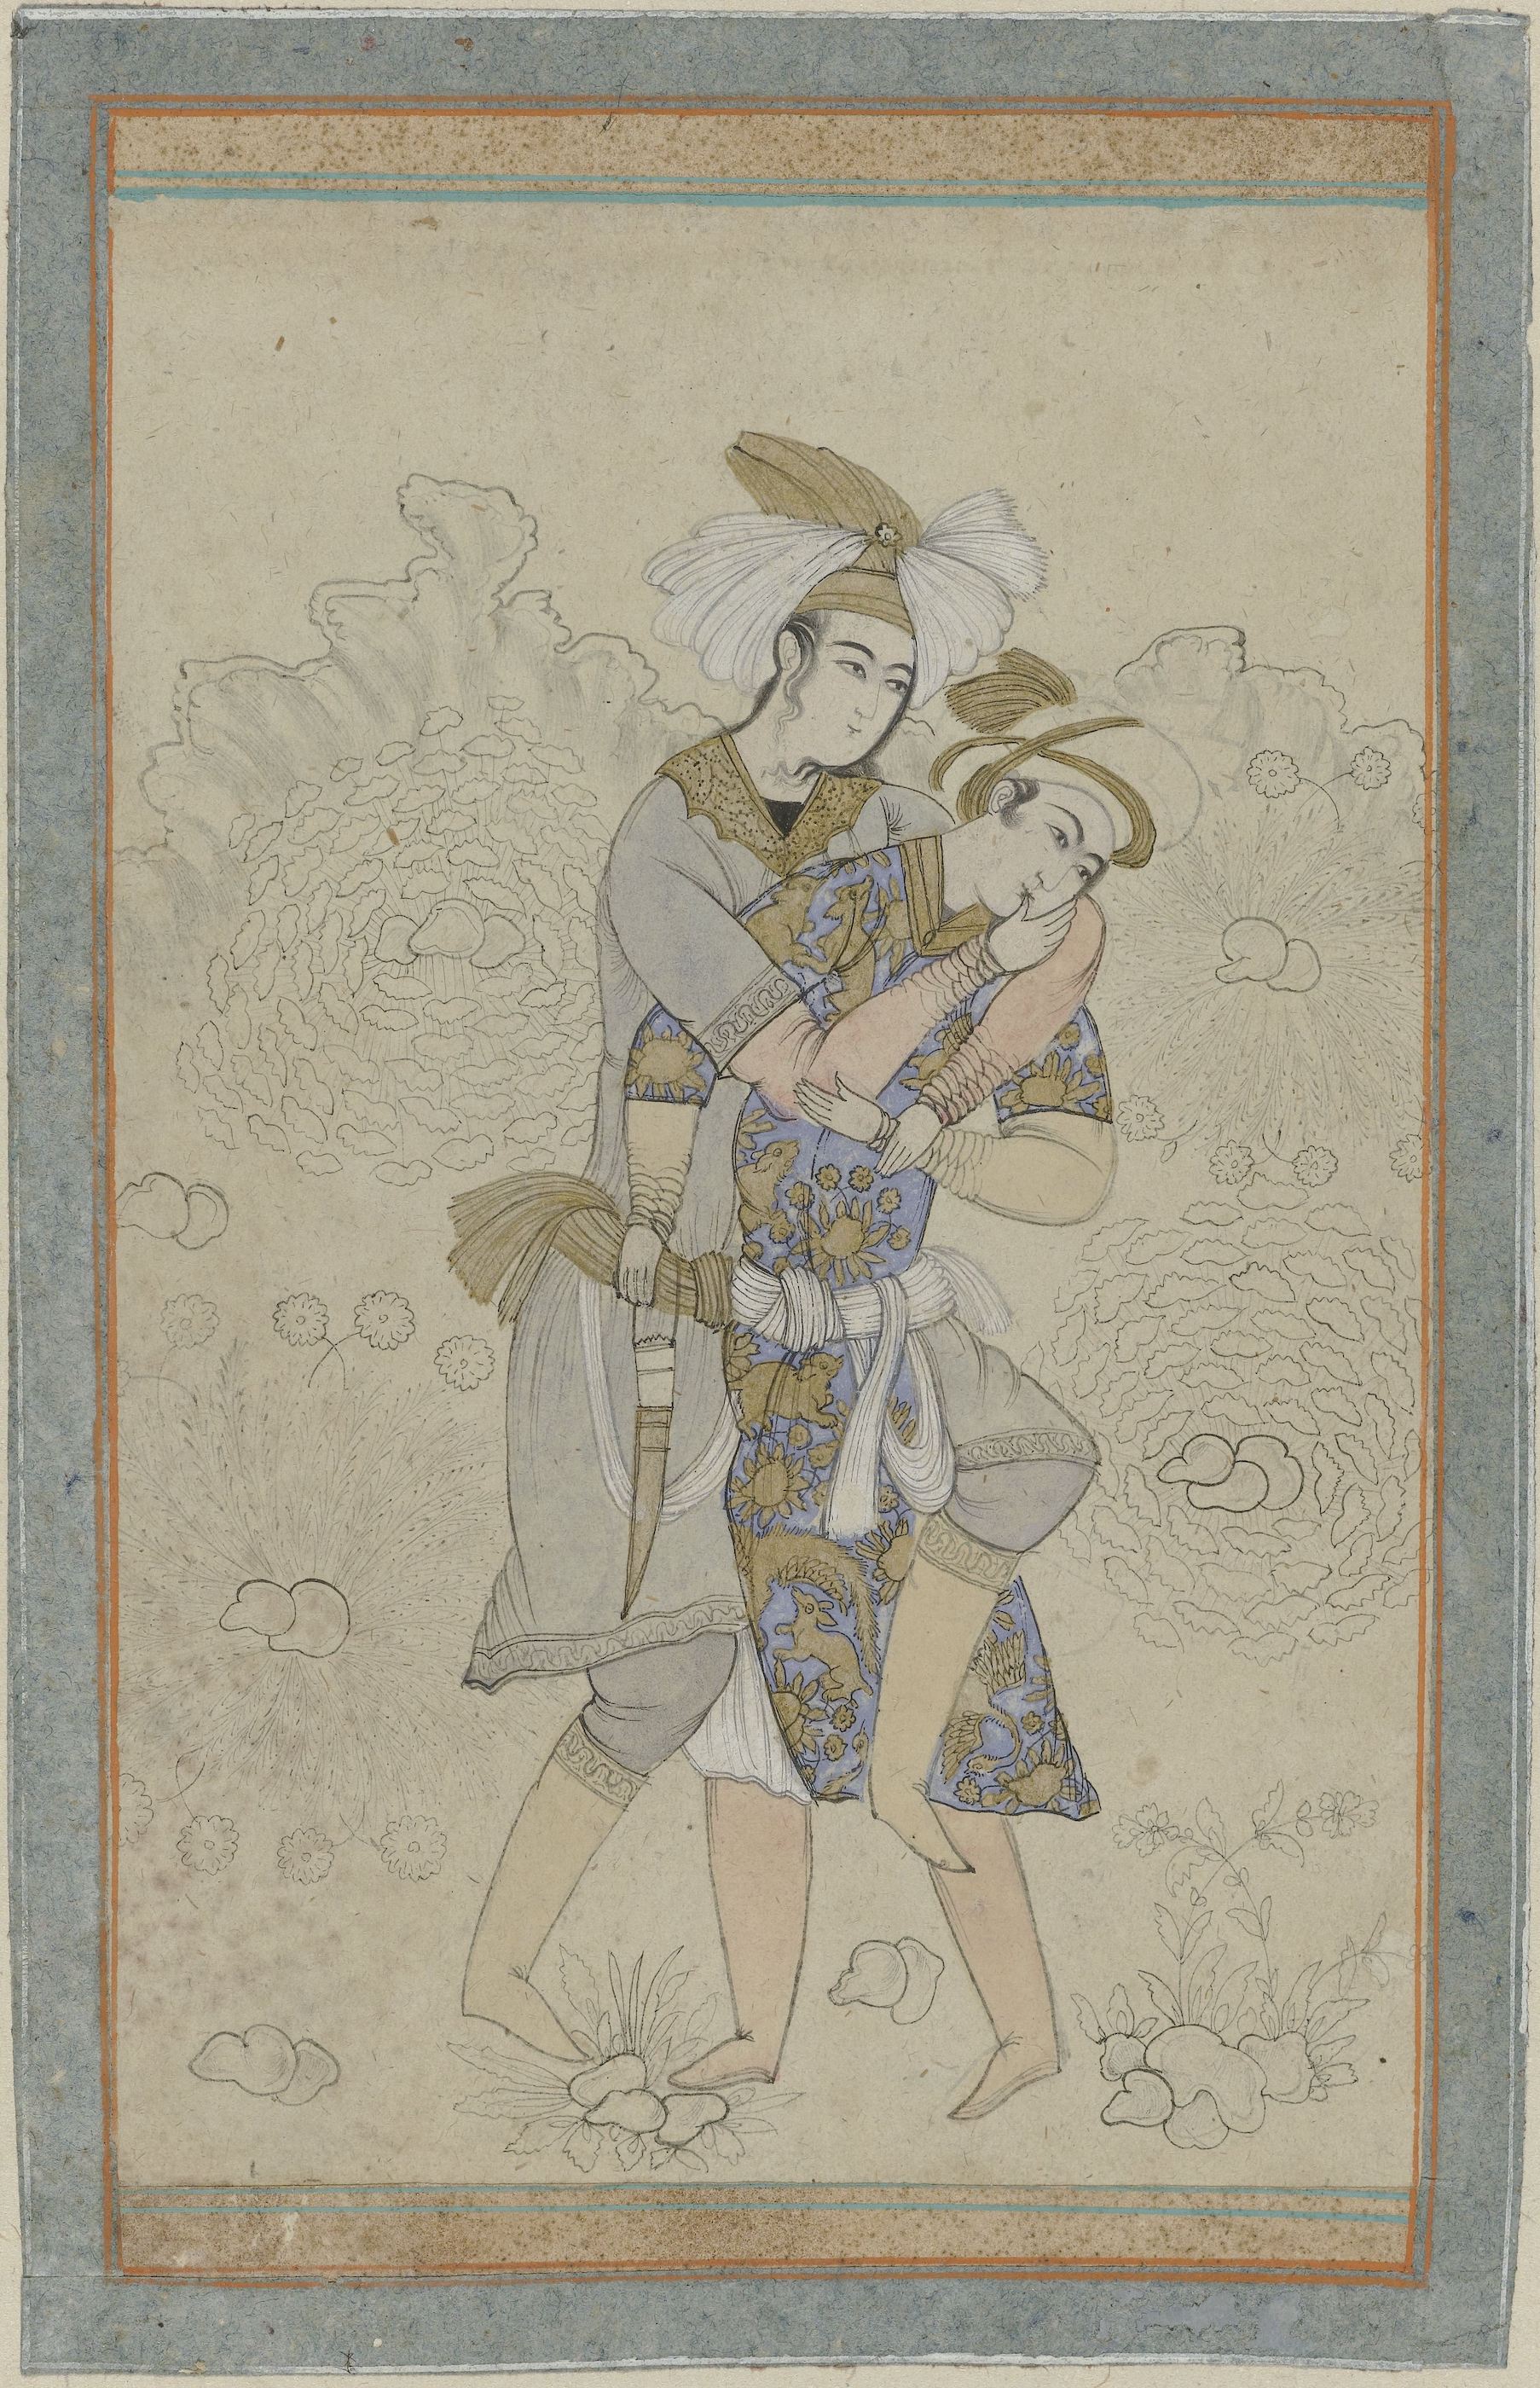 官能的に抱き合う二人の若い男性 by Unknown Artist - 1866-99年頃 - 30 x 42.5 cm 